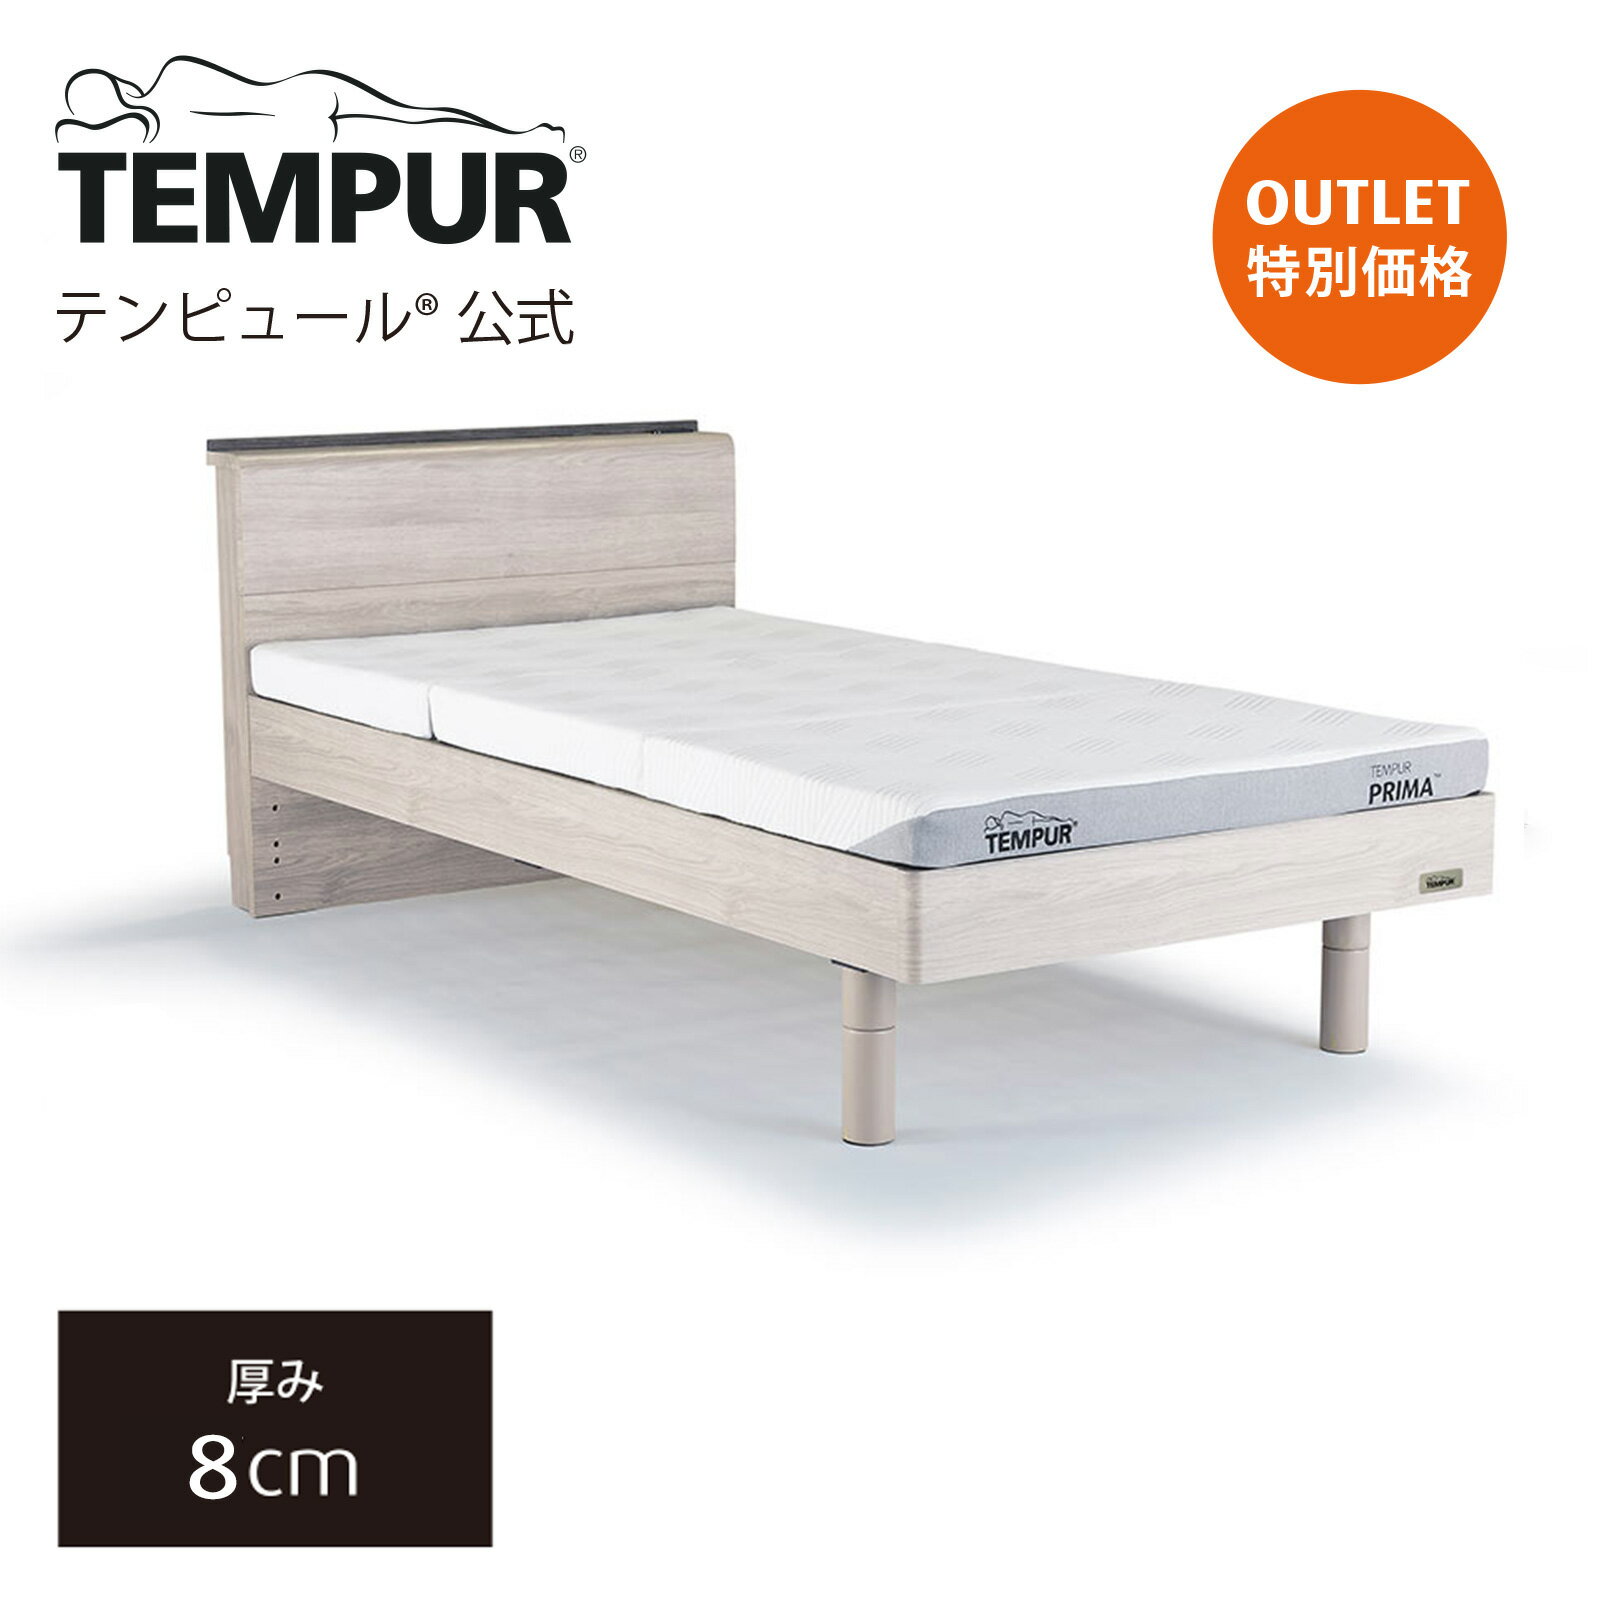 【アウトレット特別価格】テンピュール ベッド マットレス シングル セミダブル ダブル Tempur 木製ベッドと薄型マットレスのセット | すのこベッド | プリマ フトン 厚み8cm 日本正規品 保証なし